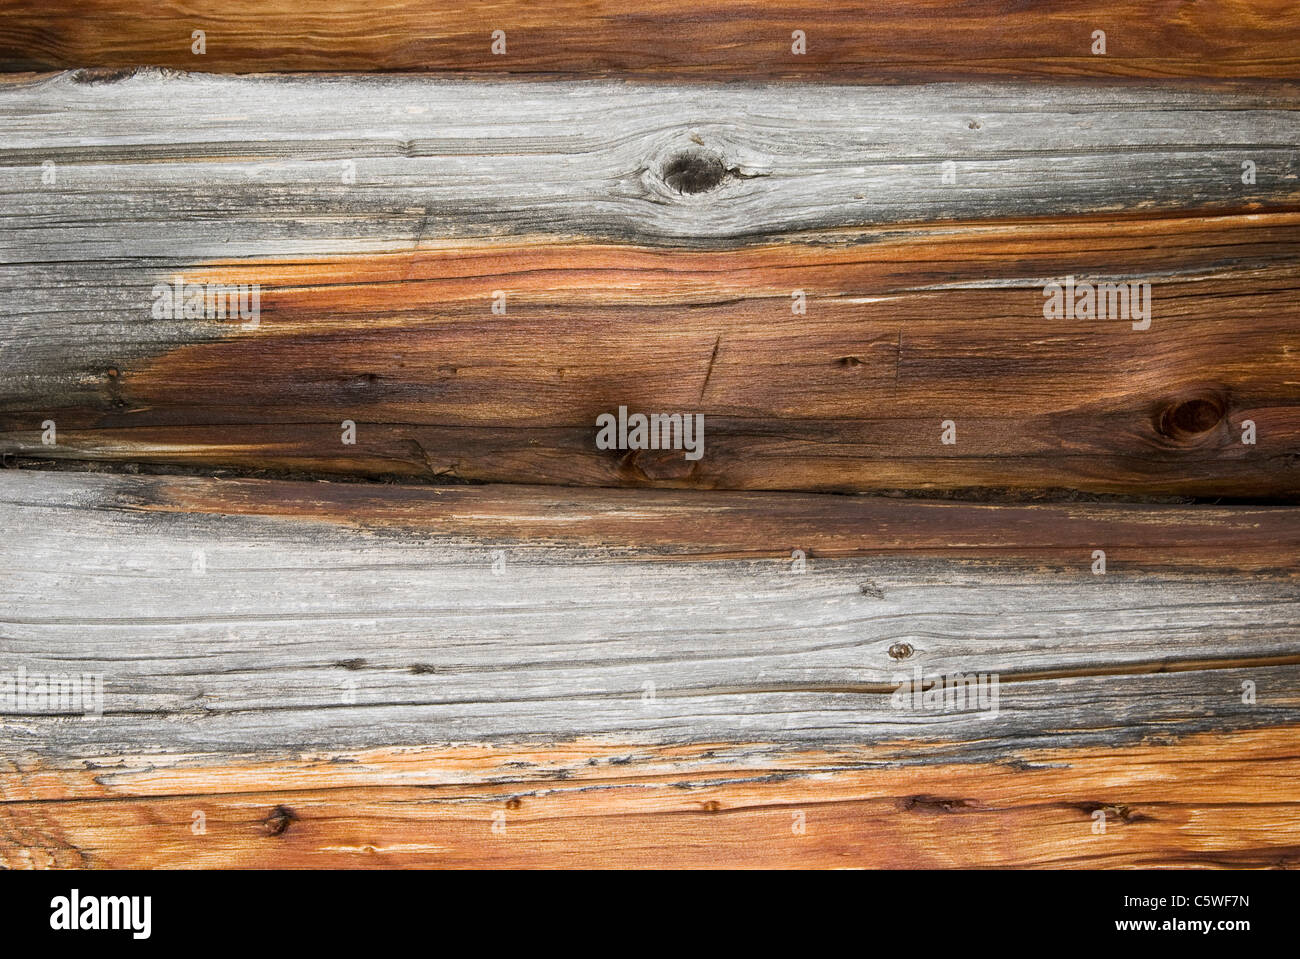 Wooden beams, close up Stock Photo